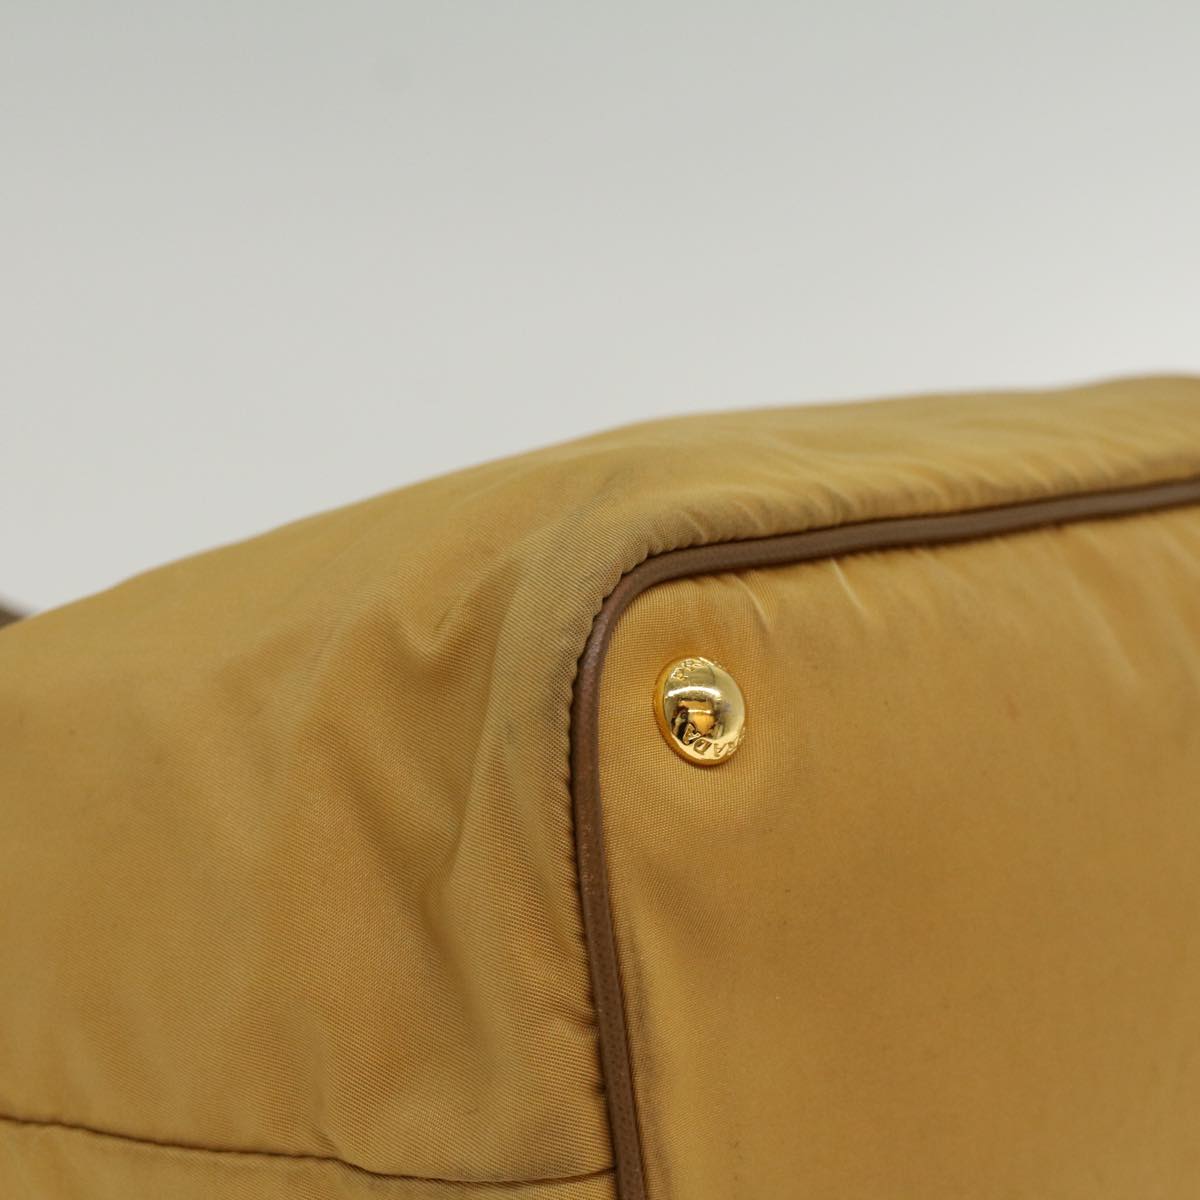 PRADA Tote Bag Nylon Leather Beige Yellow Auth ki3391